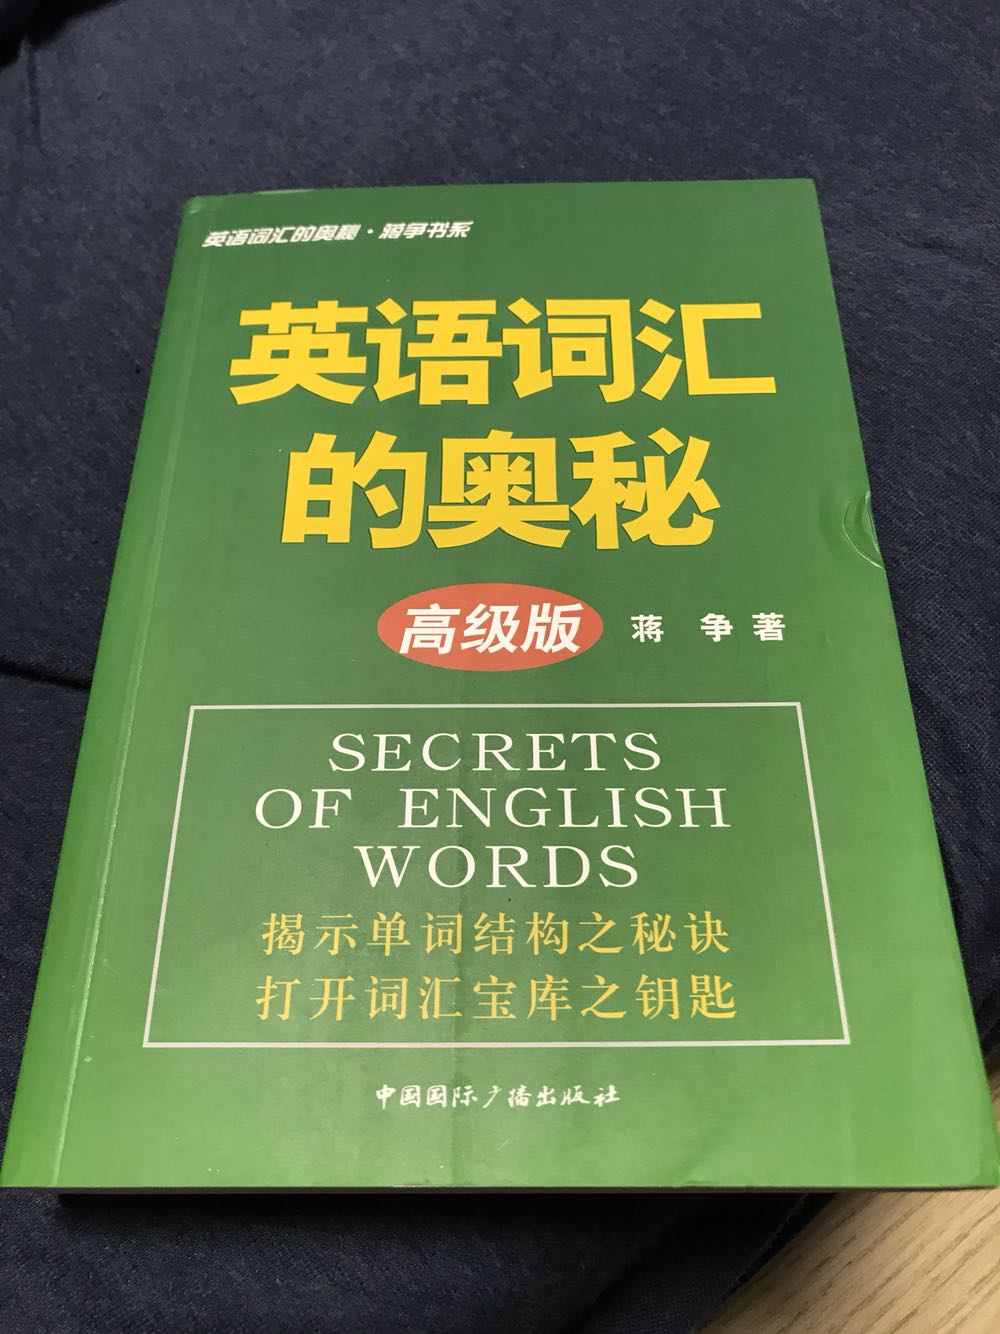 这个系列的书很好用，适合英语学者。